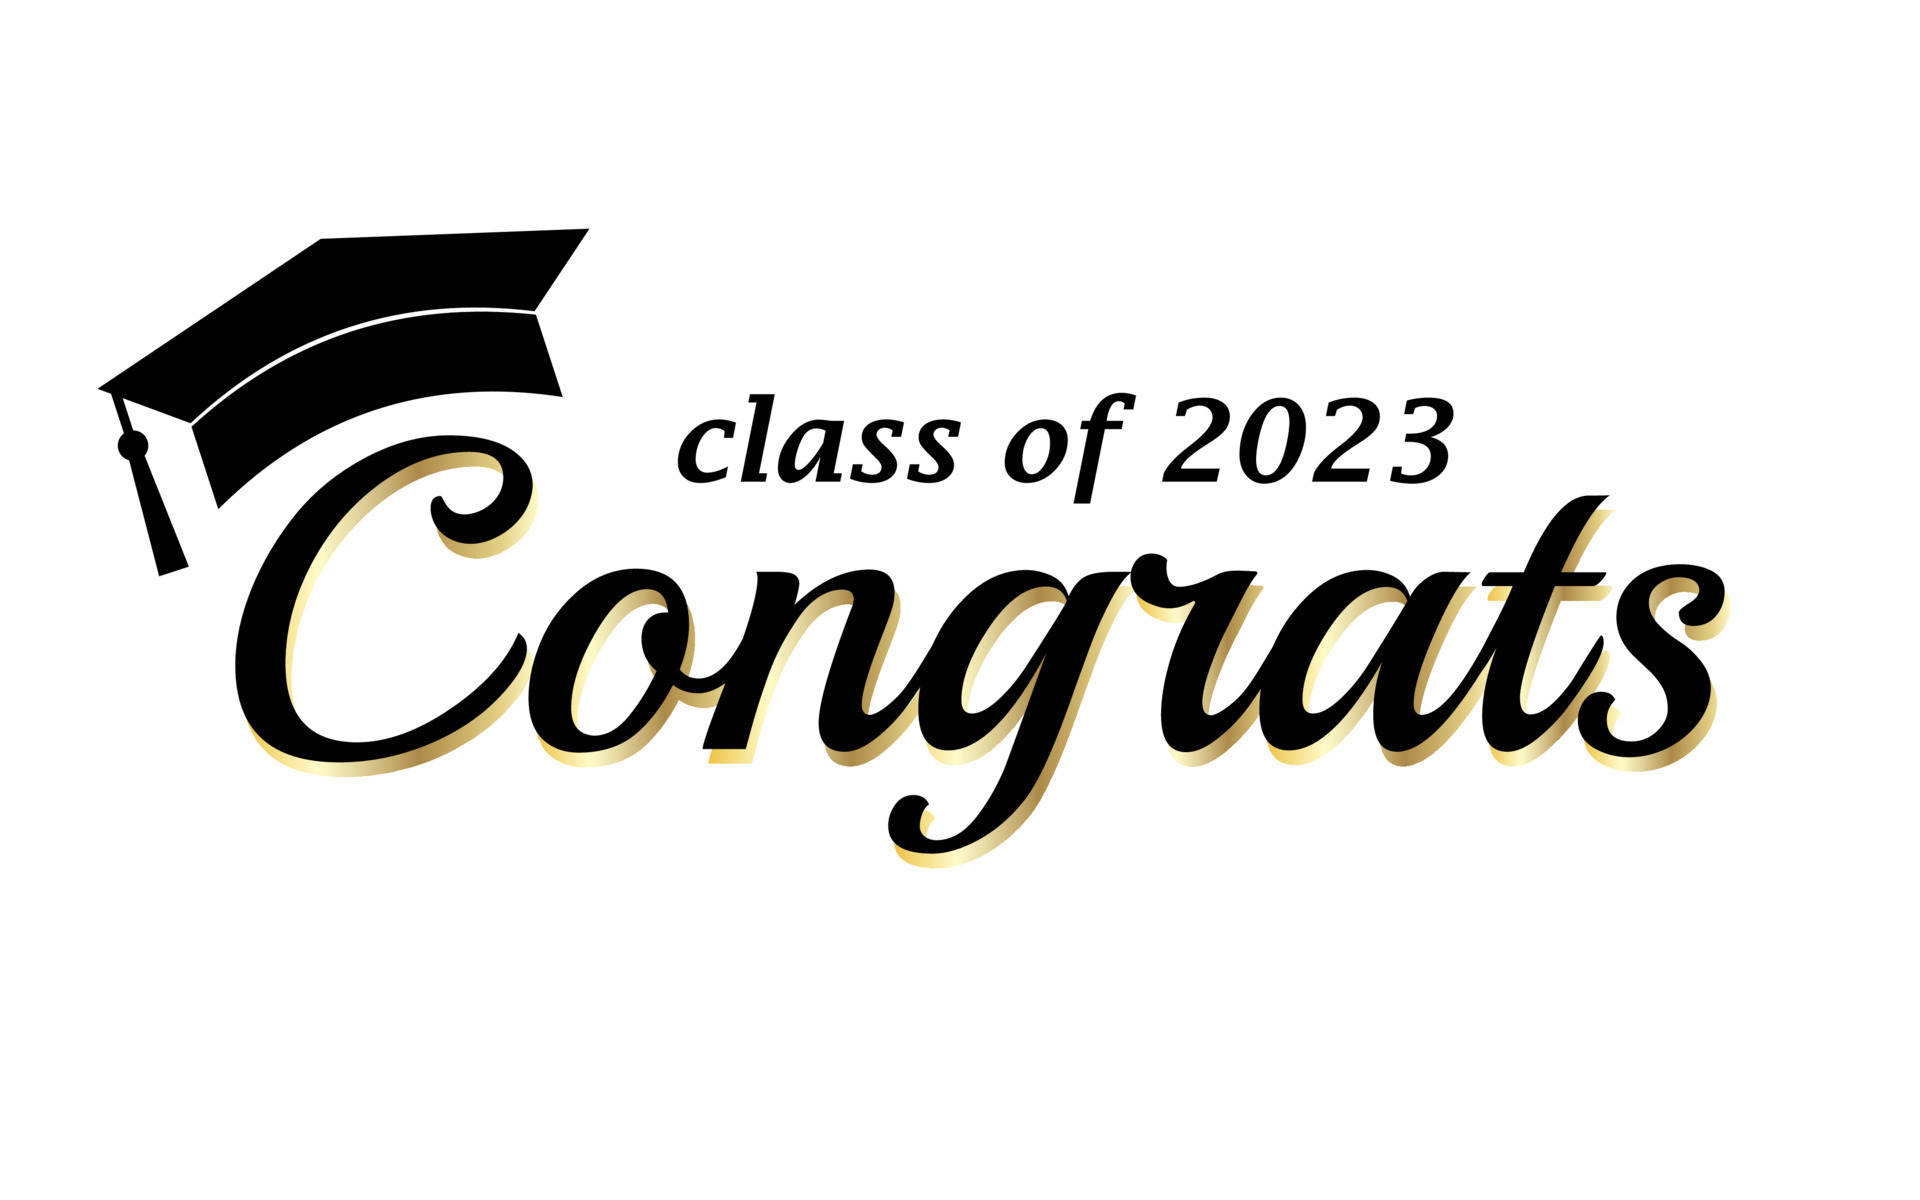 2023 Graduation Party Backdrop Congrats Grad Class of 2023 Photo Backdrops  Flora